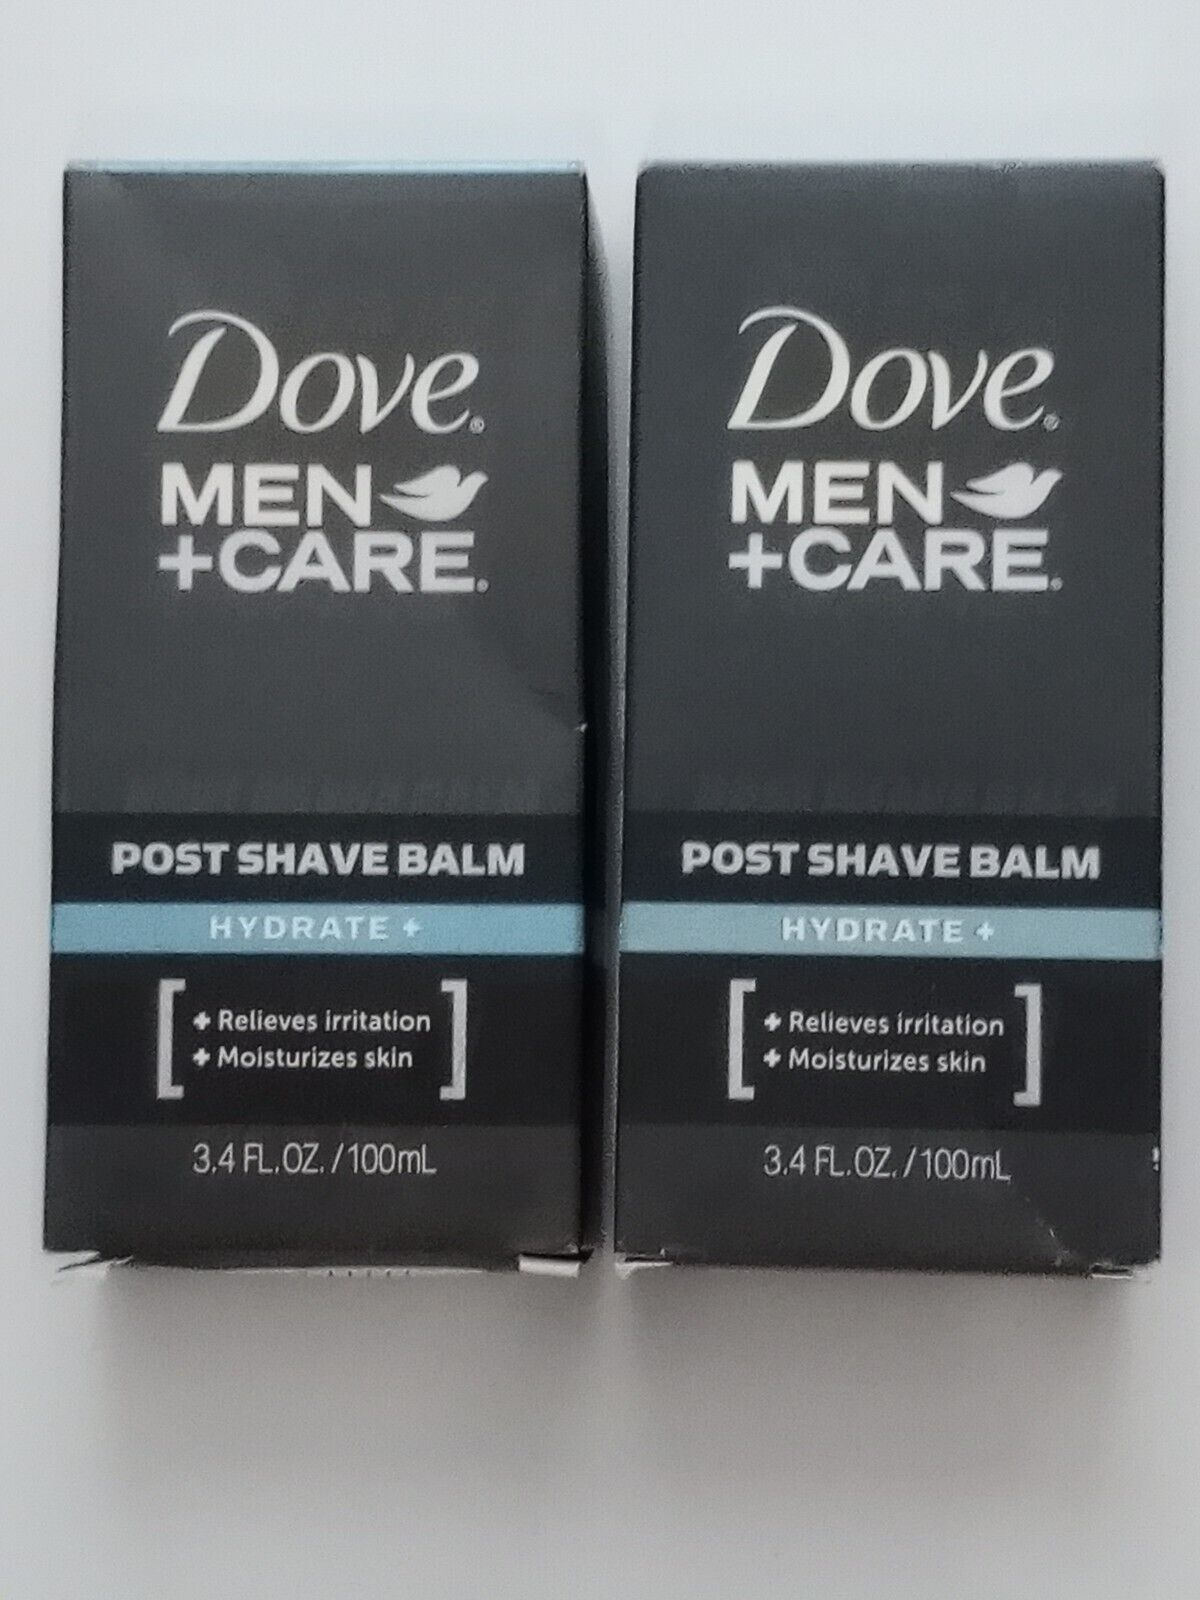 2 DOVE MEN CARE+ Care Post Shave Balm HYDRATE + 3.4 fl oz LOT OF 2 Smashed box Dove 260122